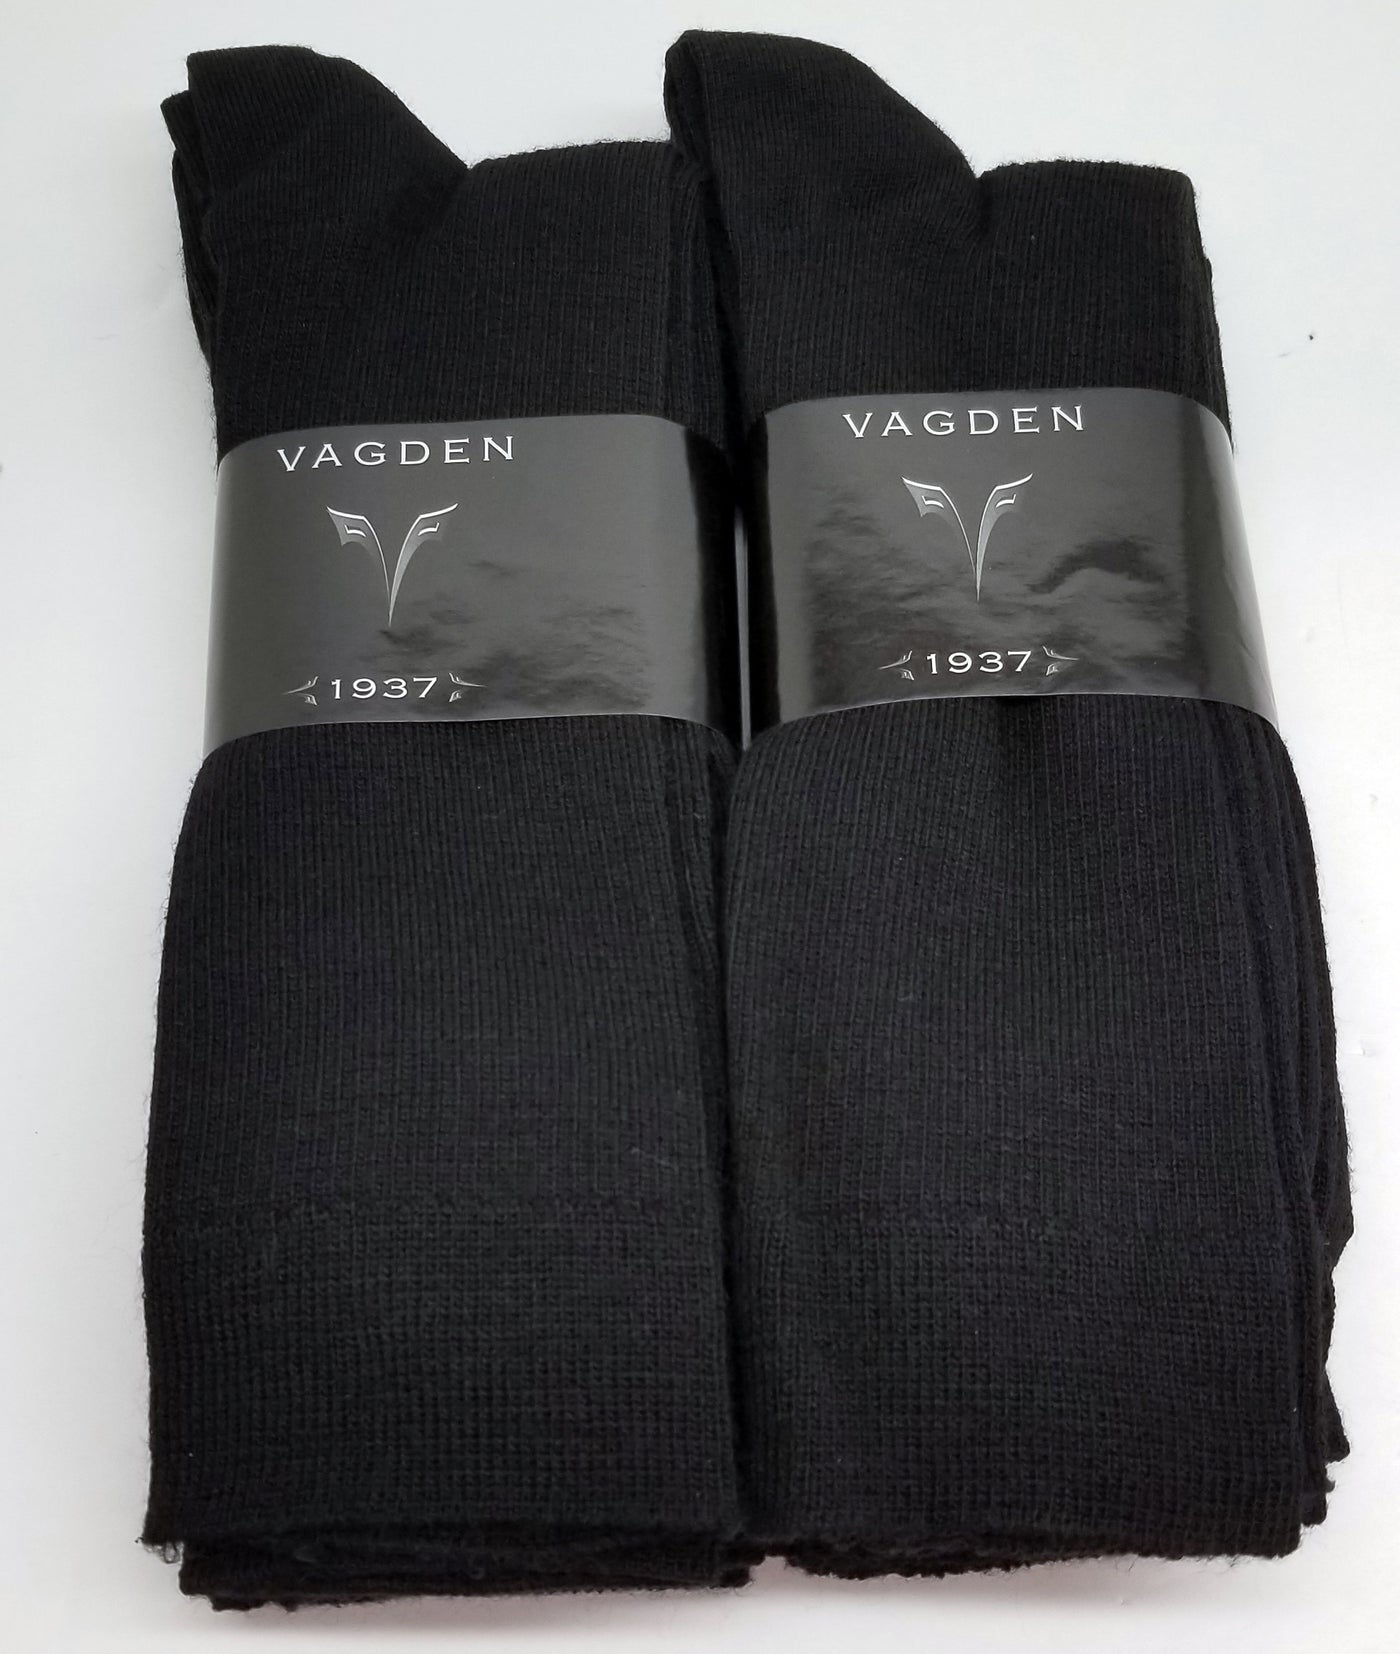 Vagden Merino Wool Dress Socks - Clearance 6 Pack